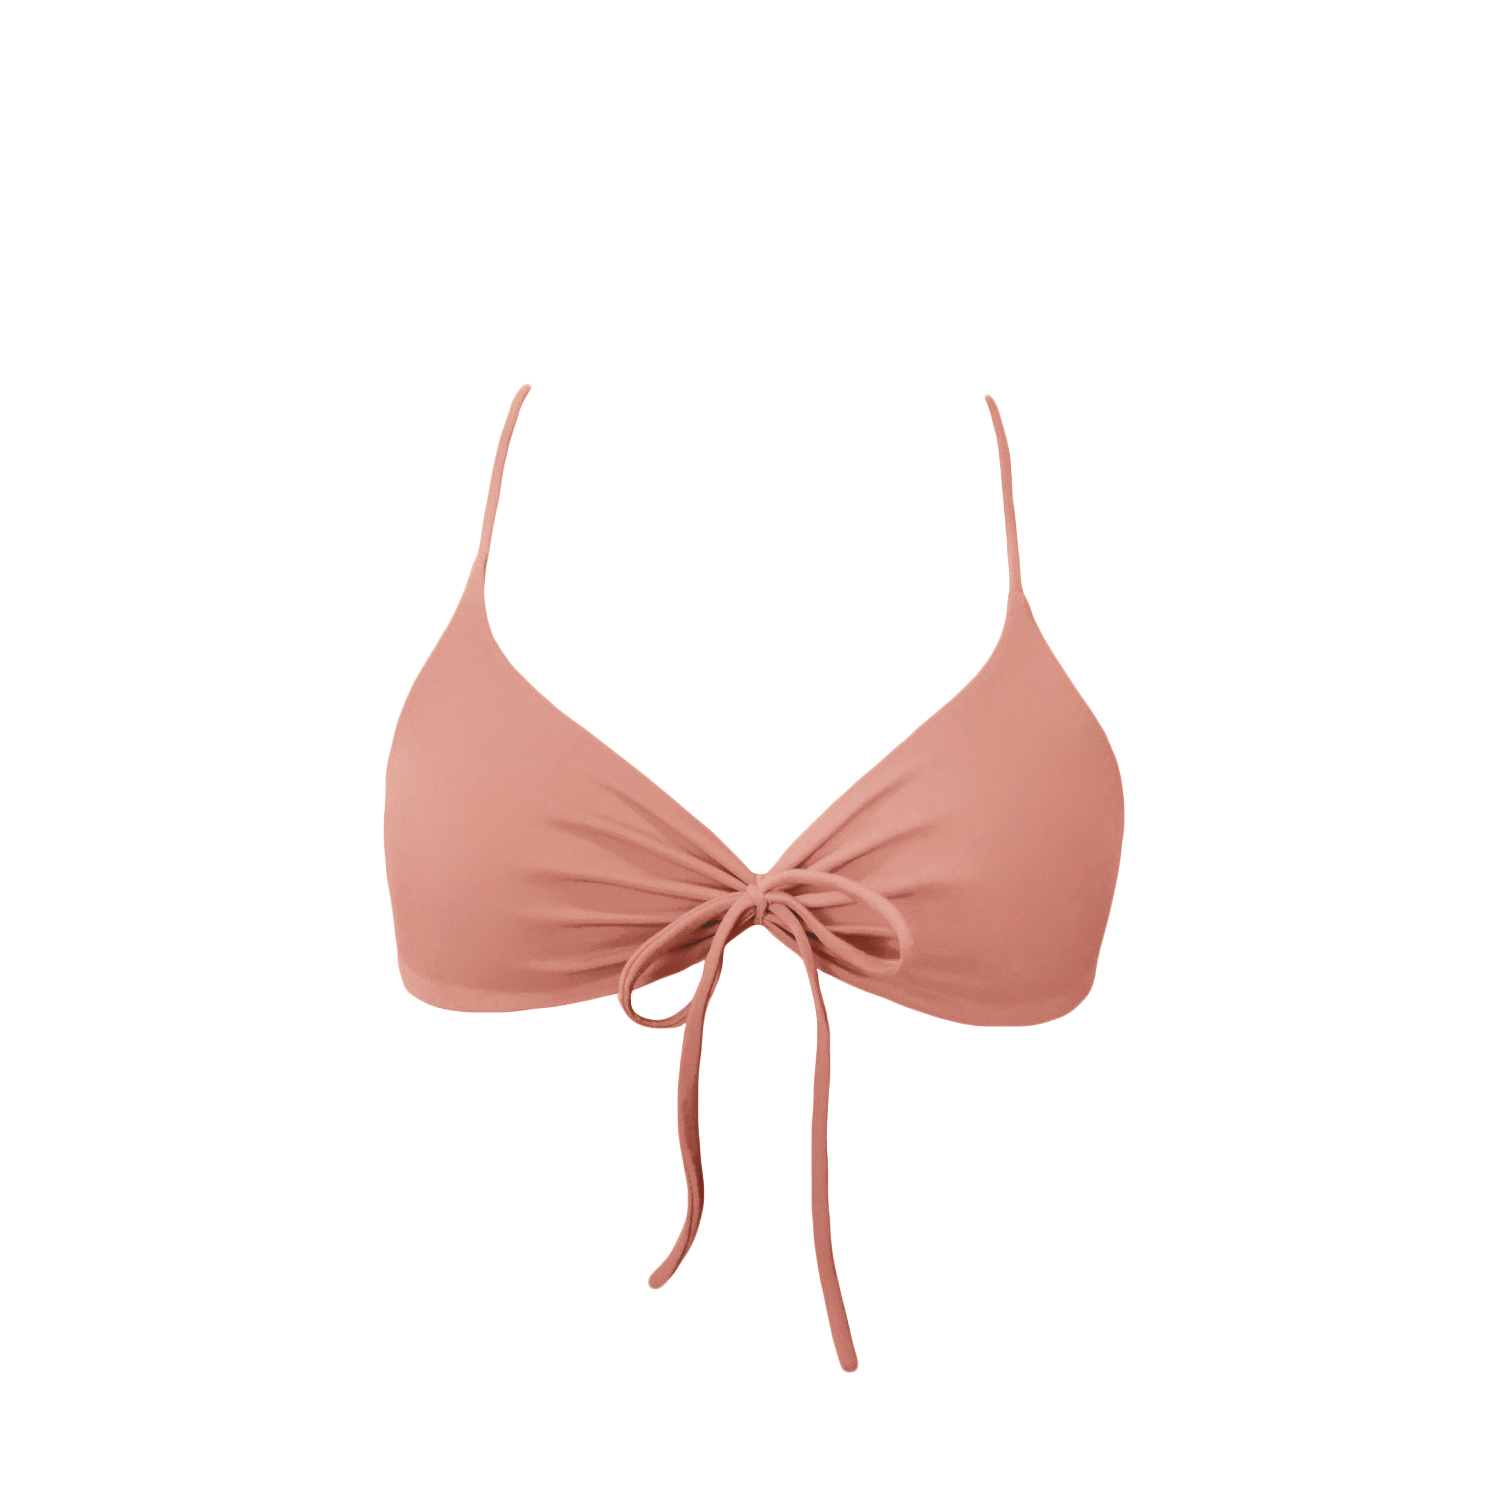 acaia-top-bikini-tied-góra-rose różowy pudrowy brzoskwiniowy łososiowy -długie-paseczki-sznureczki-kokardki-bikini-acaia- polska marka swimwear bikini top bottom brazilian rose pink peach 2